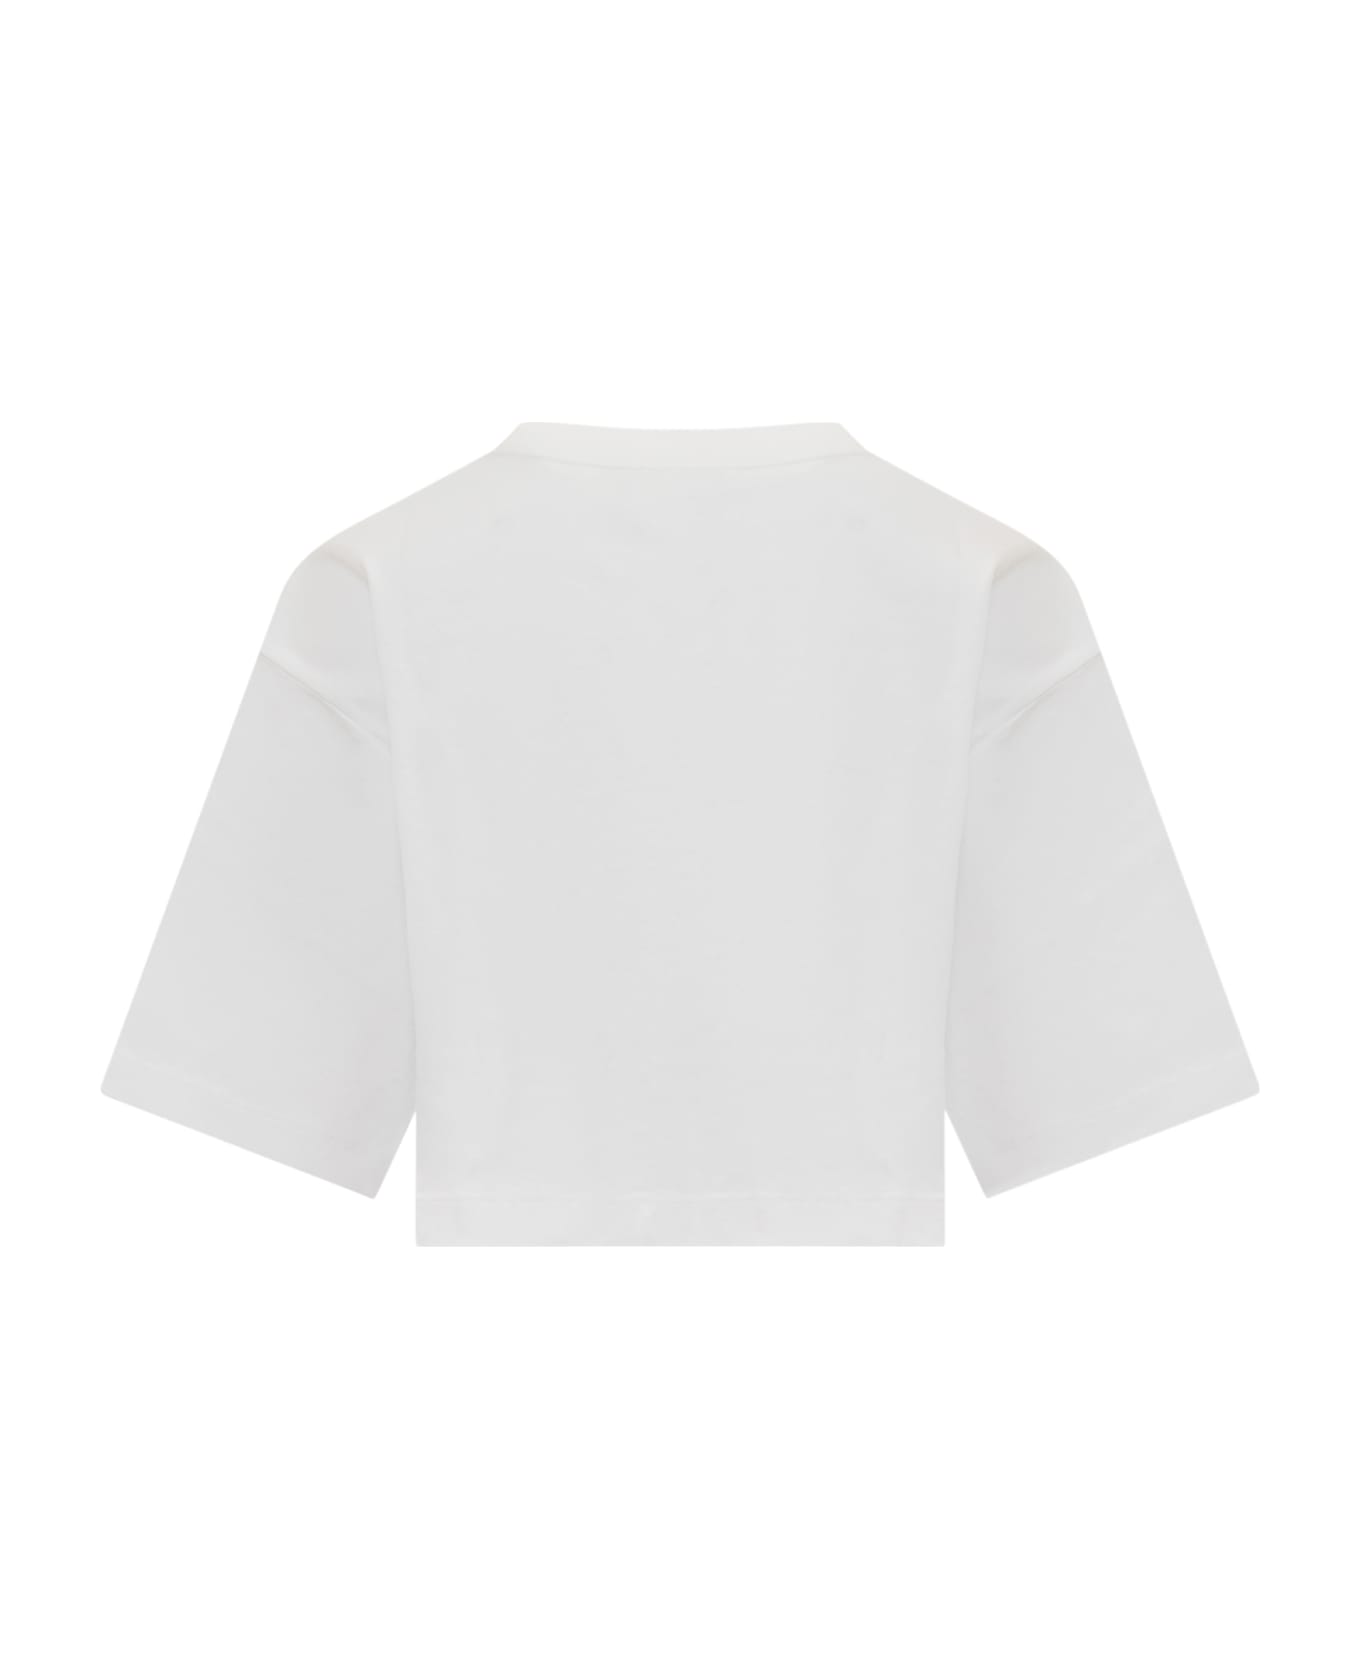 Dolce & Gabbana Cropped Logo T-shirt - White Tシャツ